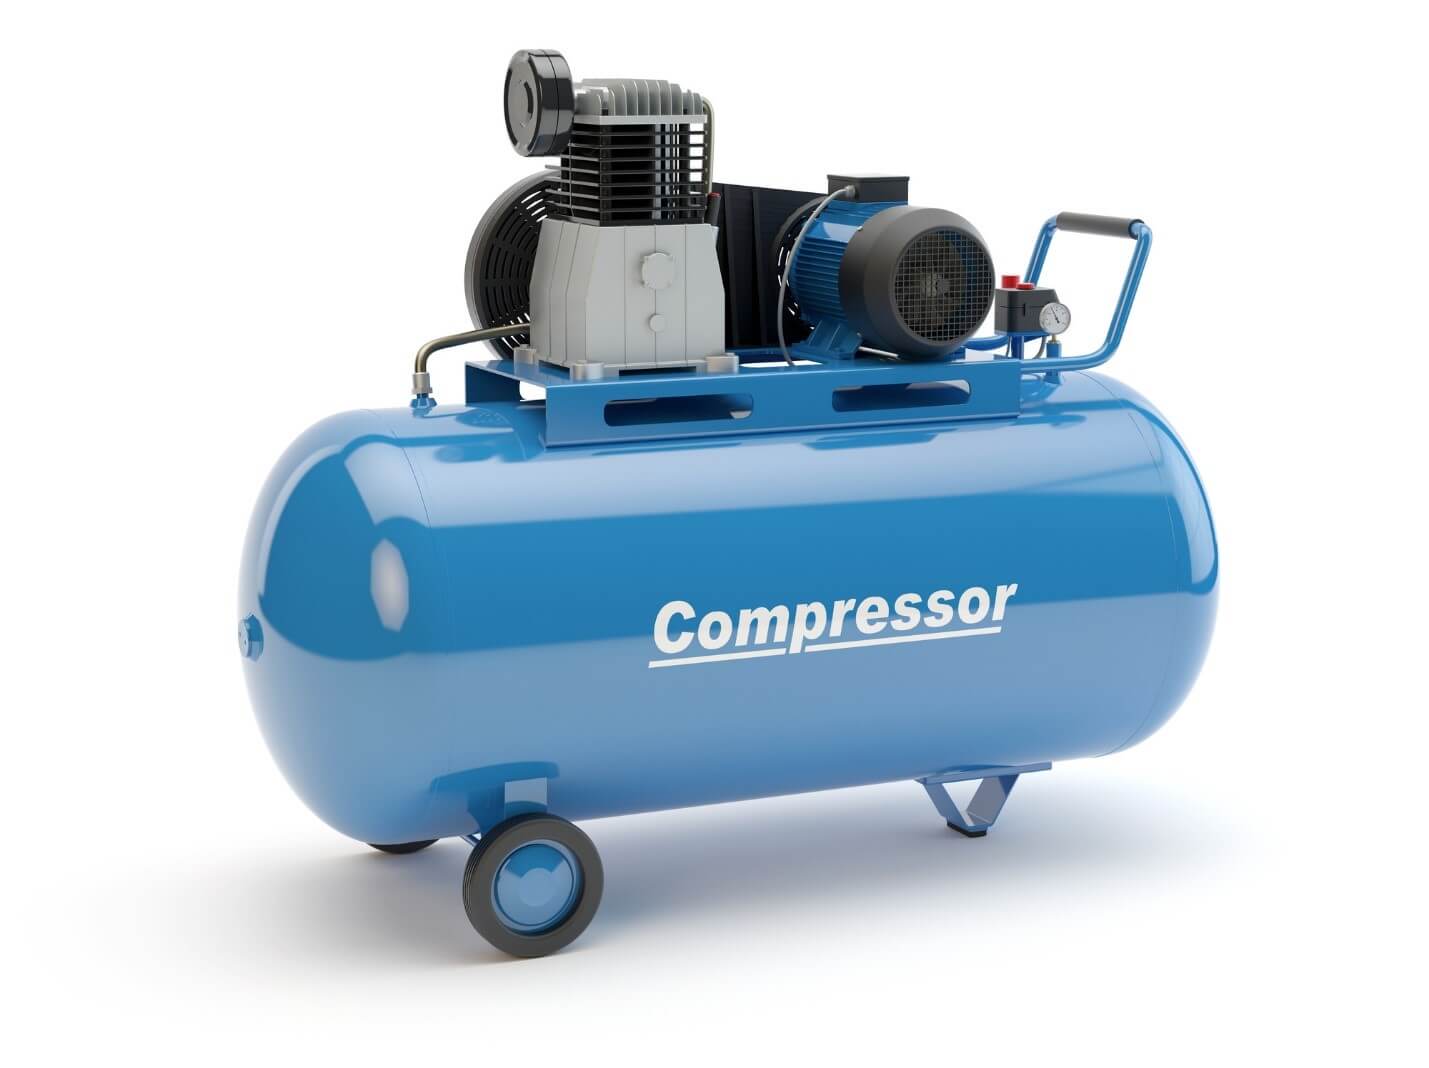 Air Compressor